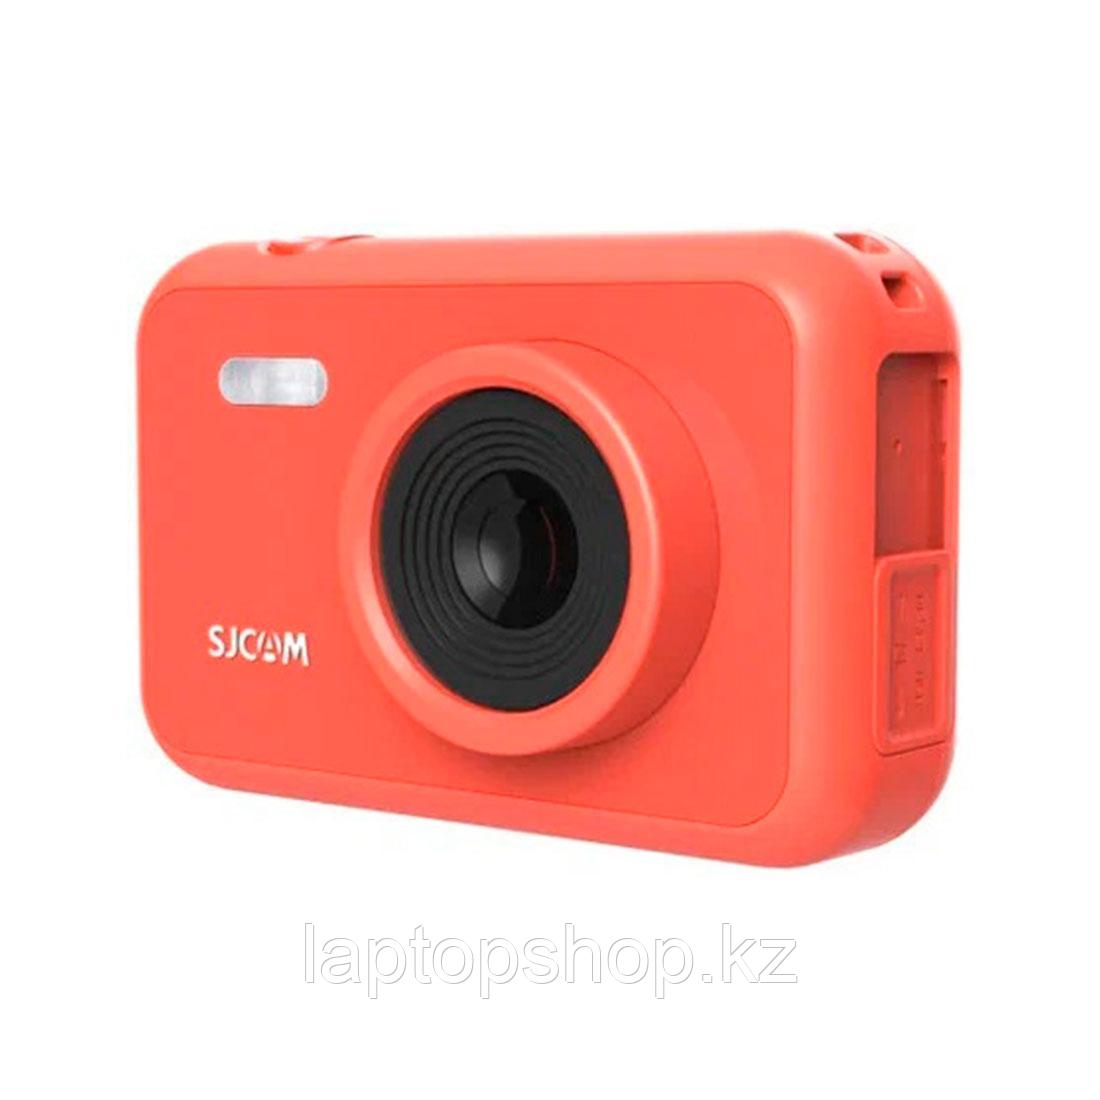 Экшн-камера SJCAM FunCam F1 Red, фото 1